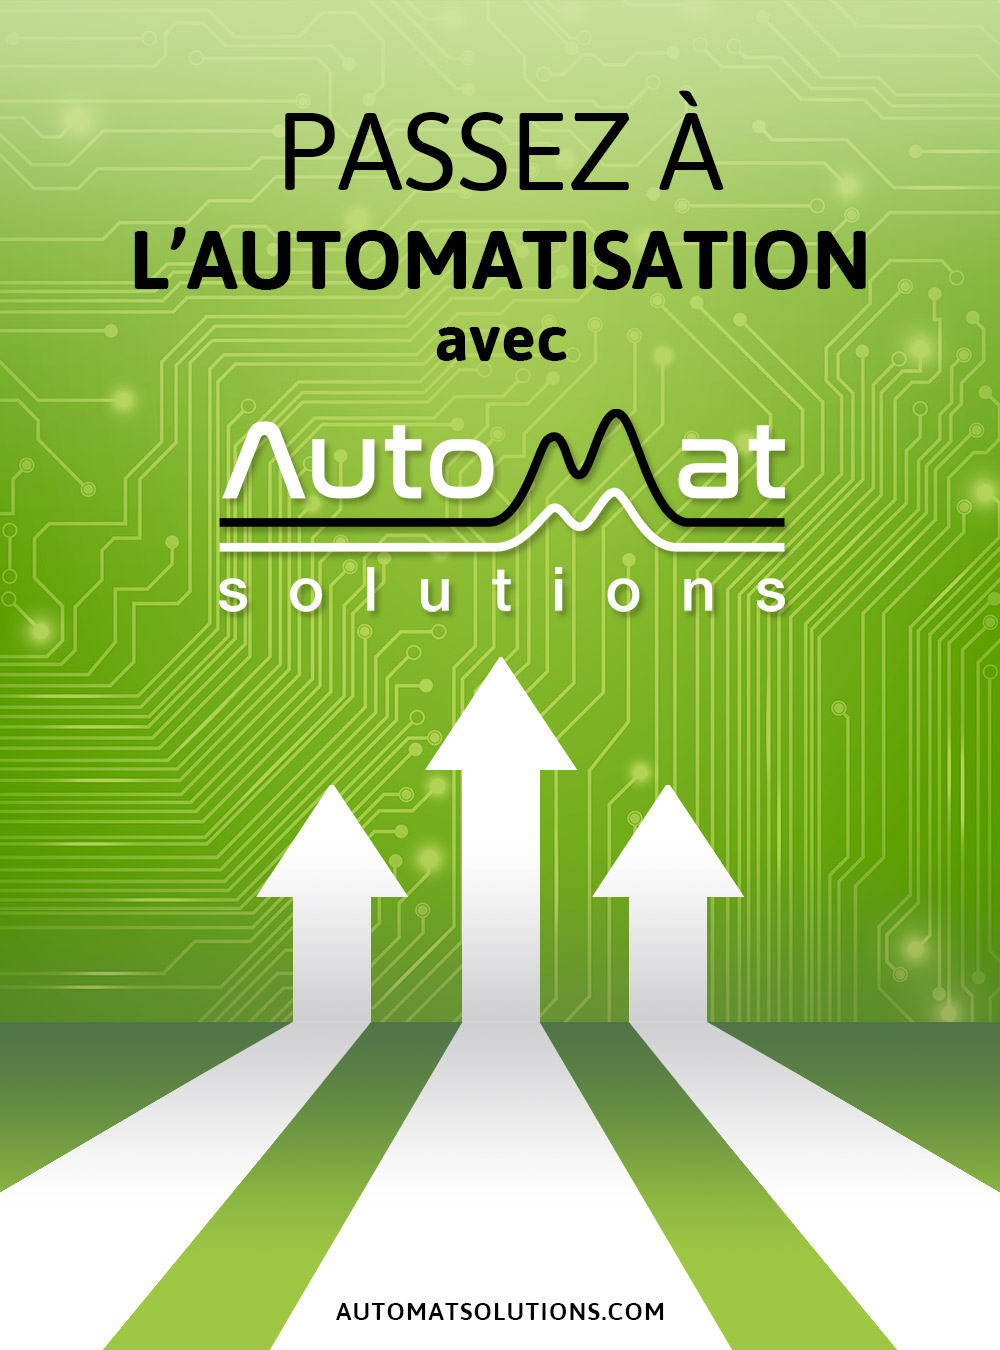 Automat Solutions | 2540 Chem. de la Petite Rivière, Vaudreuil-Dorion, QC J7V 8P2, Canada | Phone: (438) 396-9600